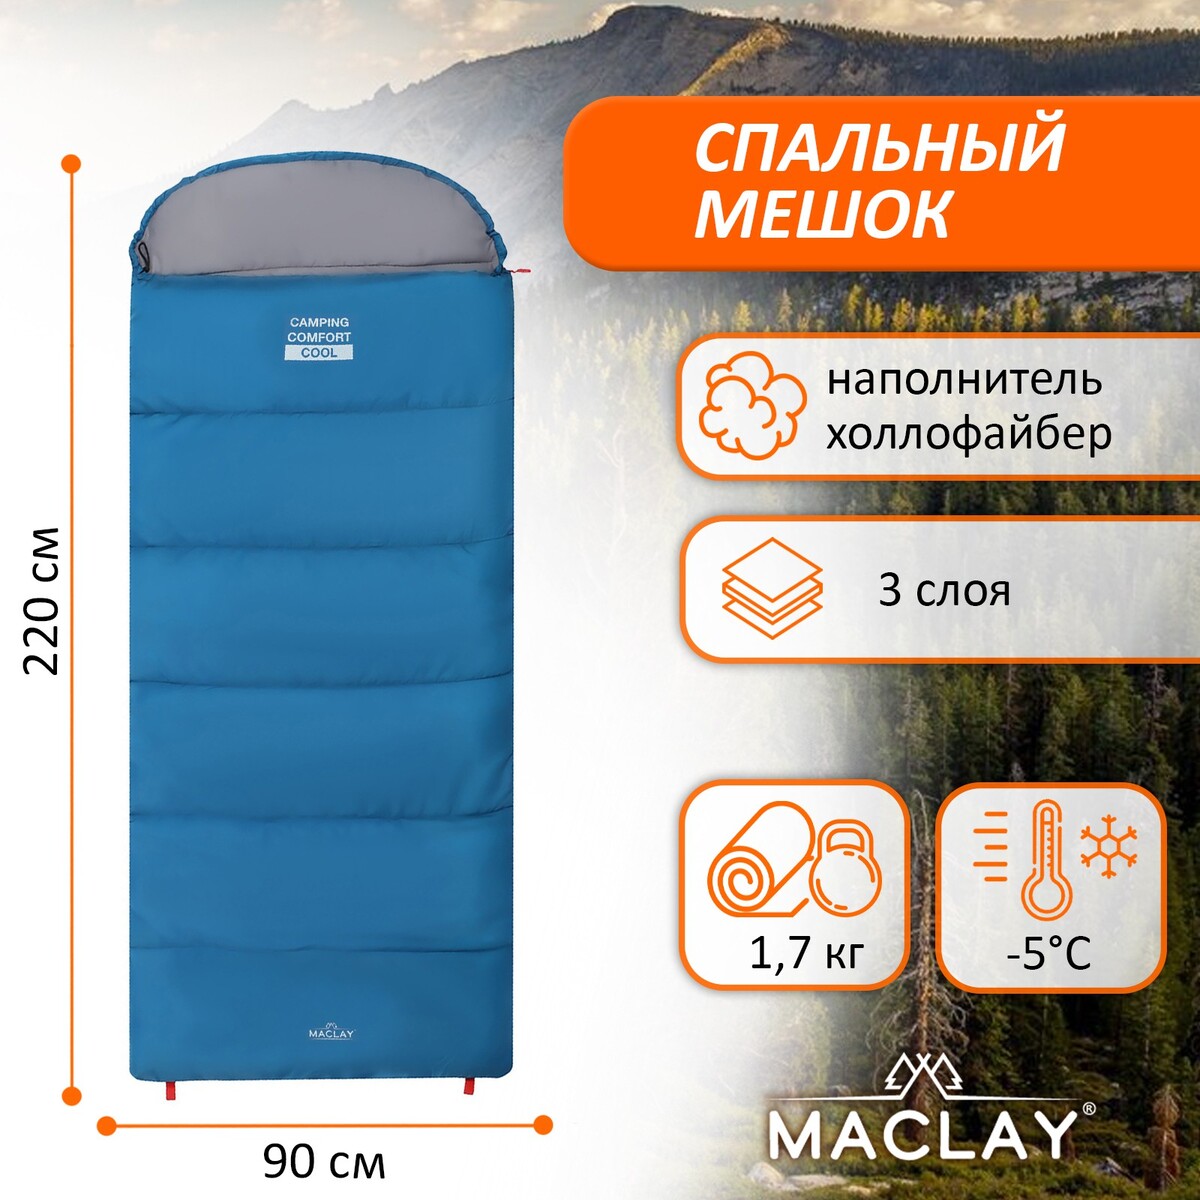 Спальный мешок maclay camping comfort cool, 3-слойный, левый, 220х90 см, -5/+10°с спальный мешок maclay camping comfort cool 3 слойный правый 220х90 см 5 10°с